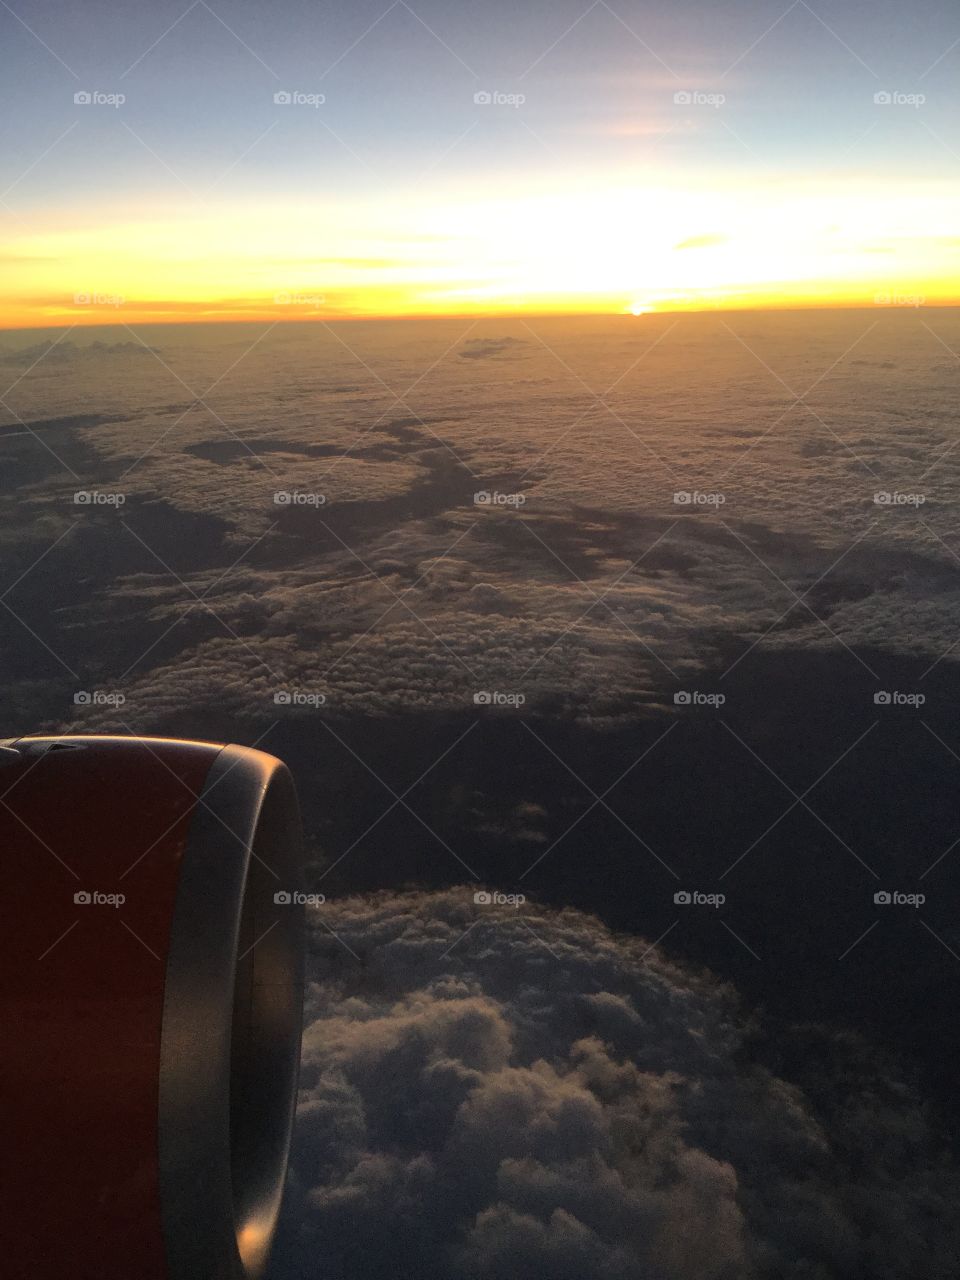 Sunset flight 